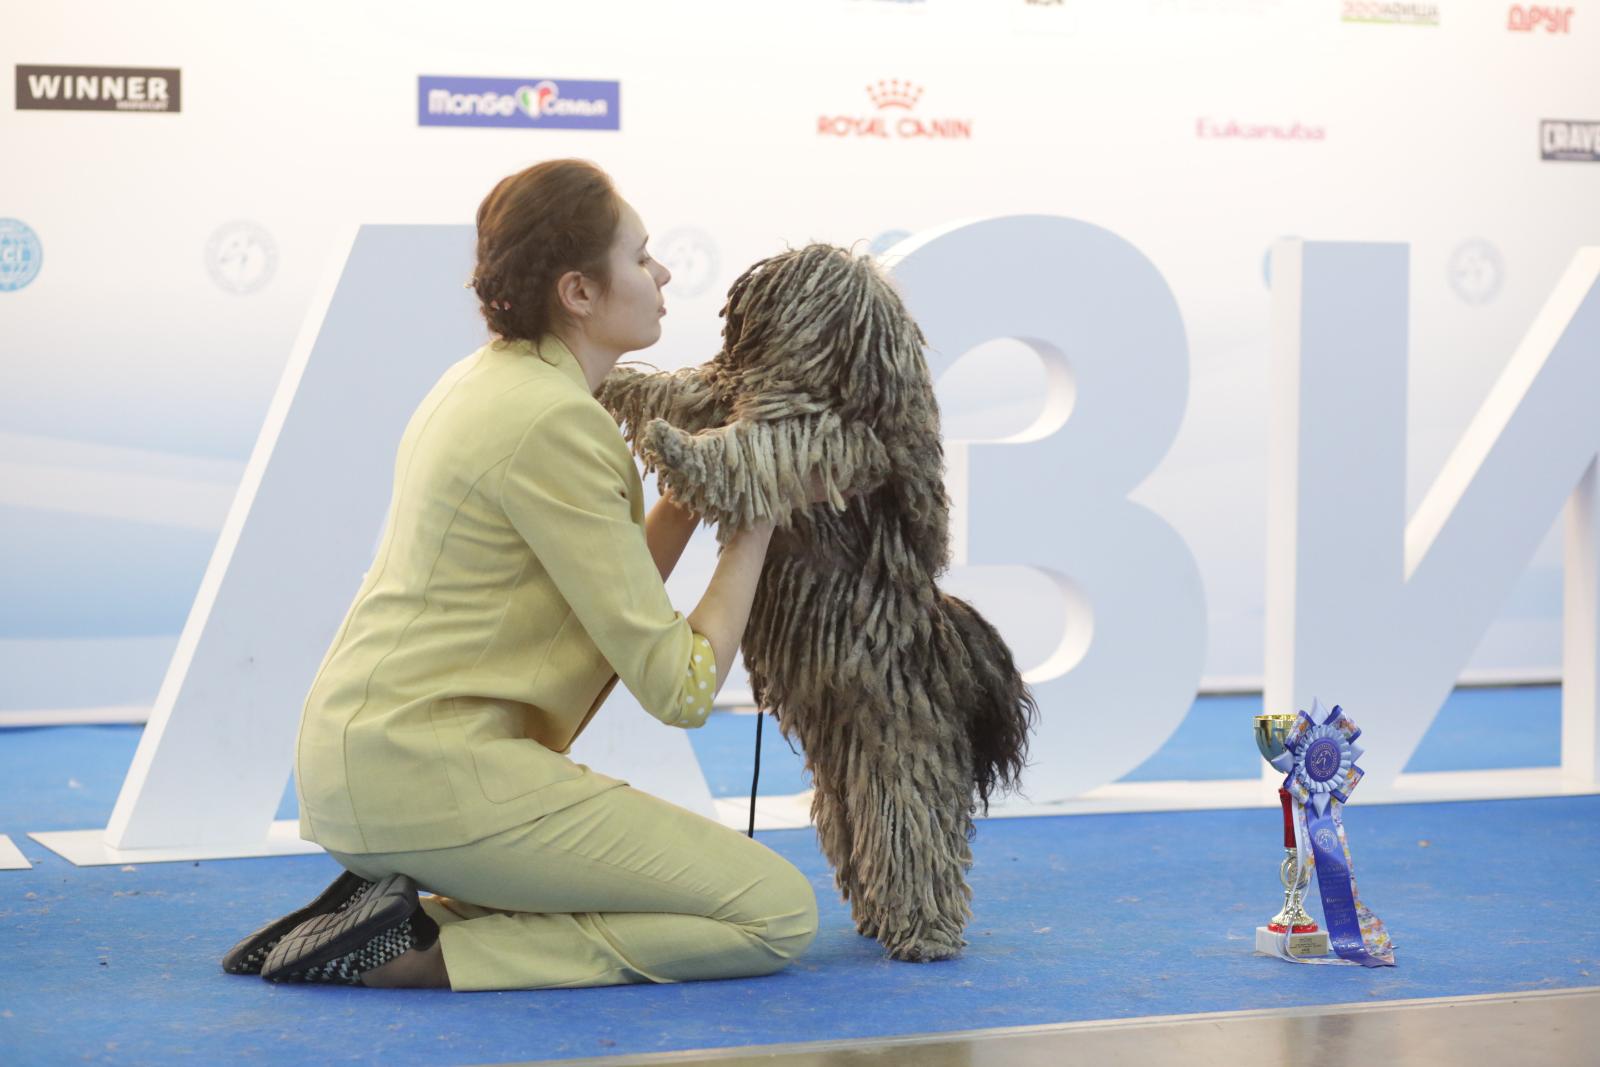 Муди, комондоры, шелти, самоеды: в Москве прошла крупнейшая выставка собак «Евразия 2021»